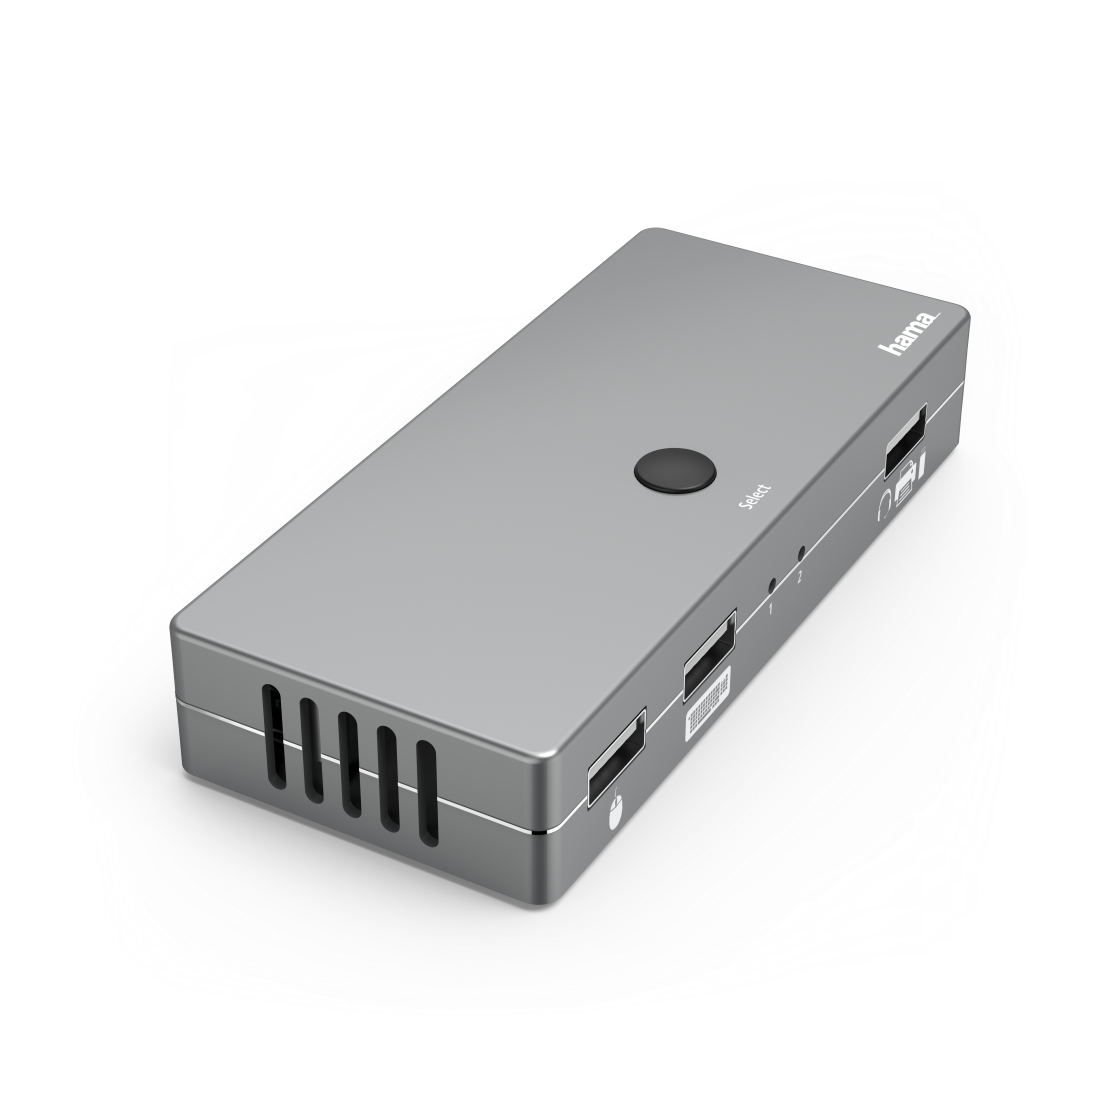 Hama 00200135. Tastatur Porttyp: USB, Maus-Porttyp: USB, Video Porttyp: HDMI. HD-Typ: 4K Ultra HD, Maximale Auflösung: 4096 x 2160 Pixel, Datenübertragungsrate (max): 0,48 Gbit/s. Produktfarbe: Metallisch, Gehäusematerial: Metall. Unterstützt Windows-Betriebssysteme: Windows 10,Windows 7,Windows 8, Unterstützt Mac-Betriebssysteme: Mac OS X 10.8 Mountain Lion. Mitgelieferte Kabel: HDMI,USB (00200135)